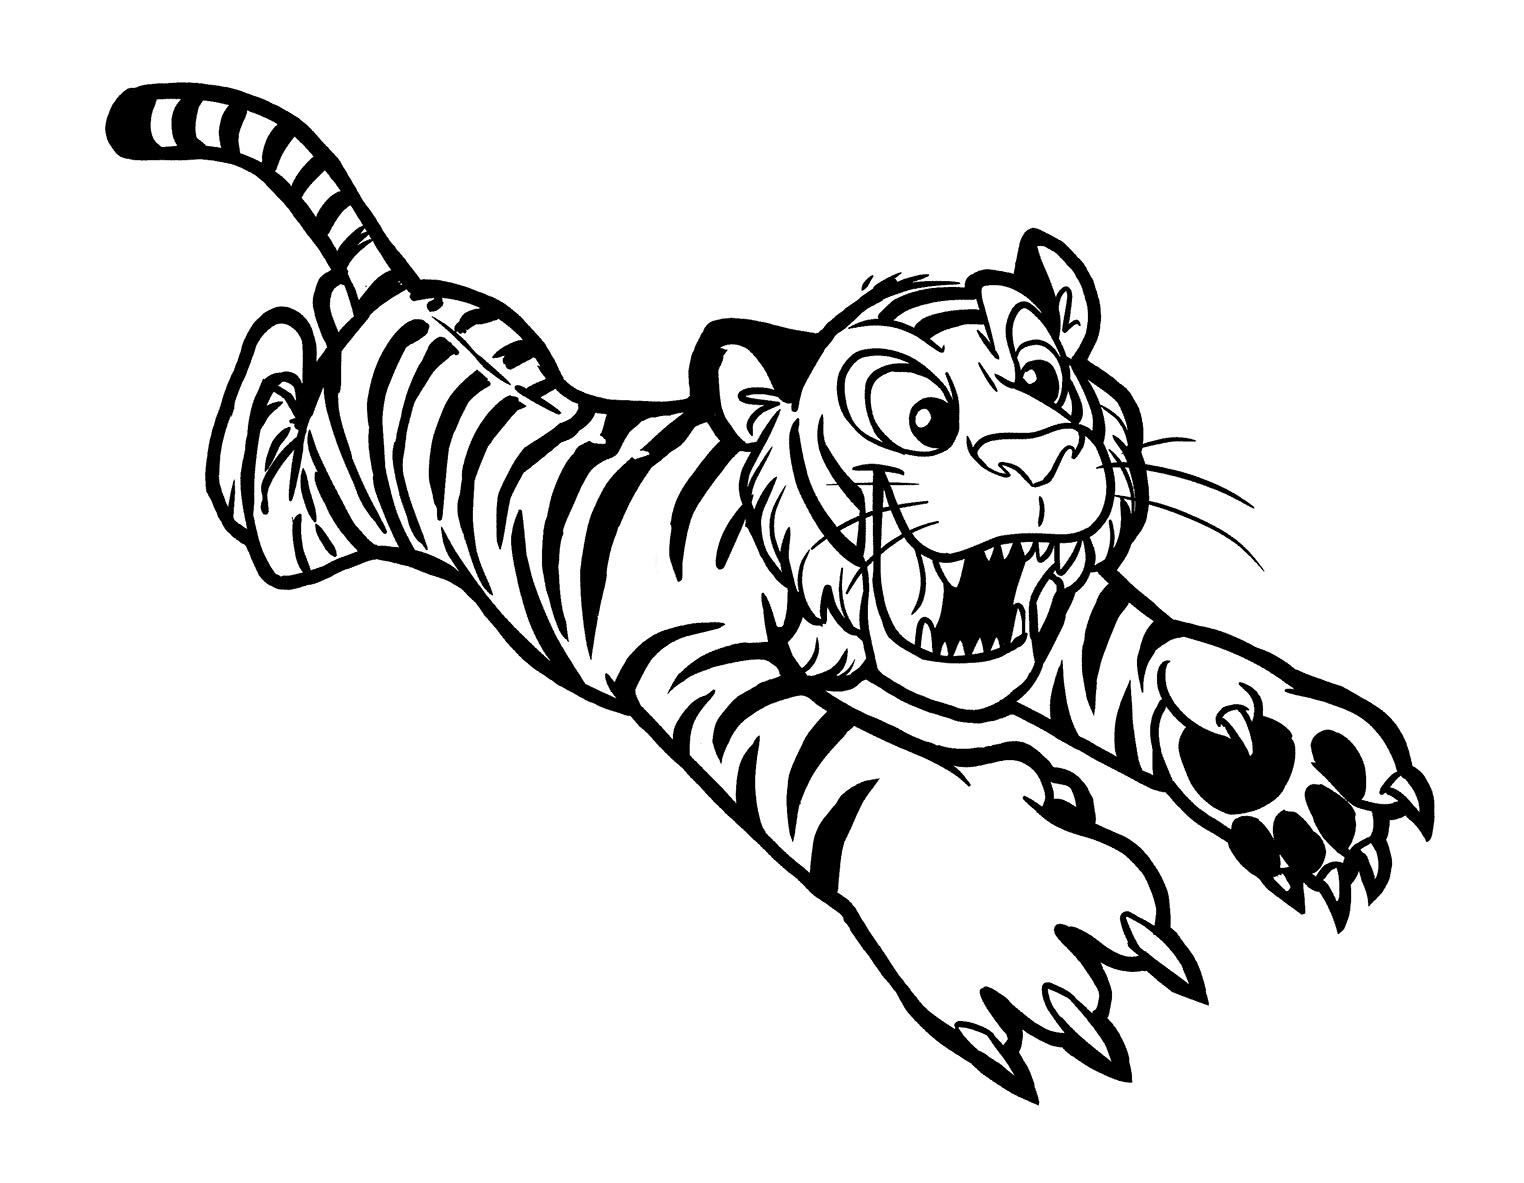 99 Tranh tô màu hình con hổ cực đẹp dành cho các bé  Đề án 2020  Tổng  hợp chia sẻ hình ảnh tranh vẽ biểu mẫu trong lĩnh vực giáo dục